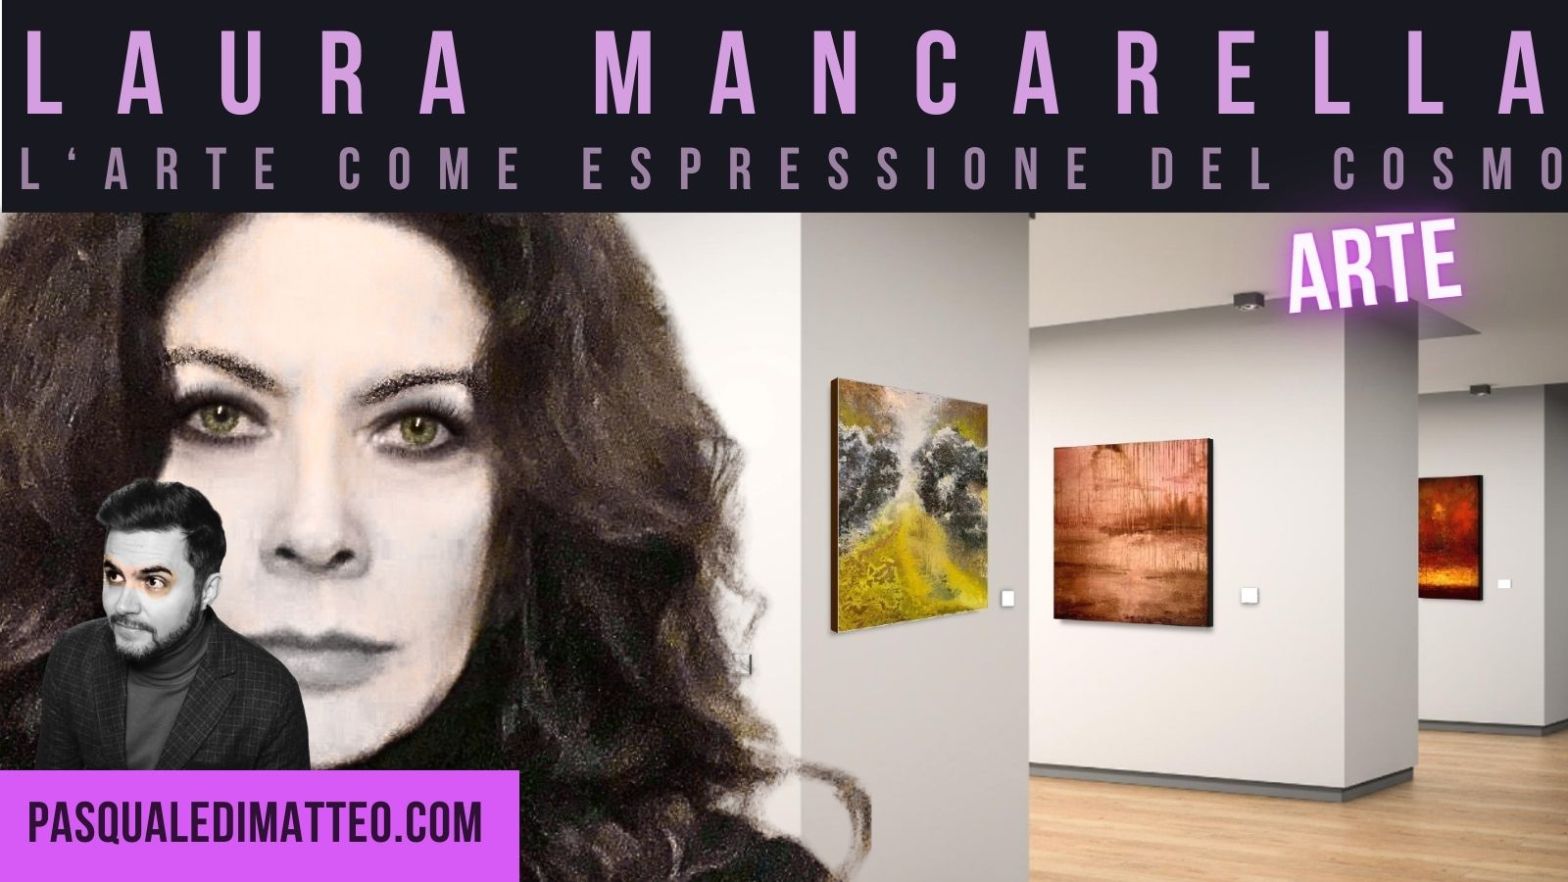 Copertina dell'articolo sulla pittrice milanese e del Lago d'Endine, Laura Mancarella.